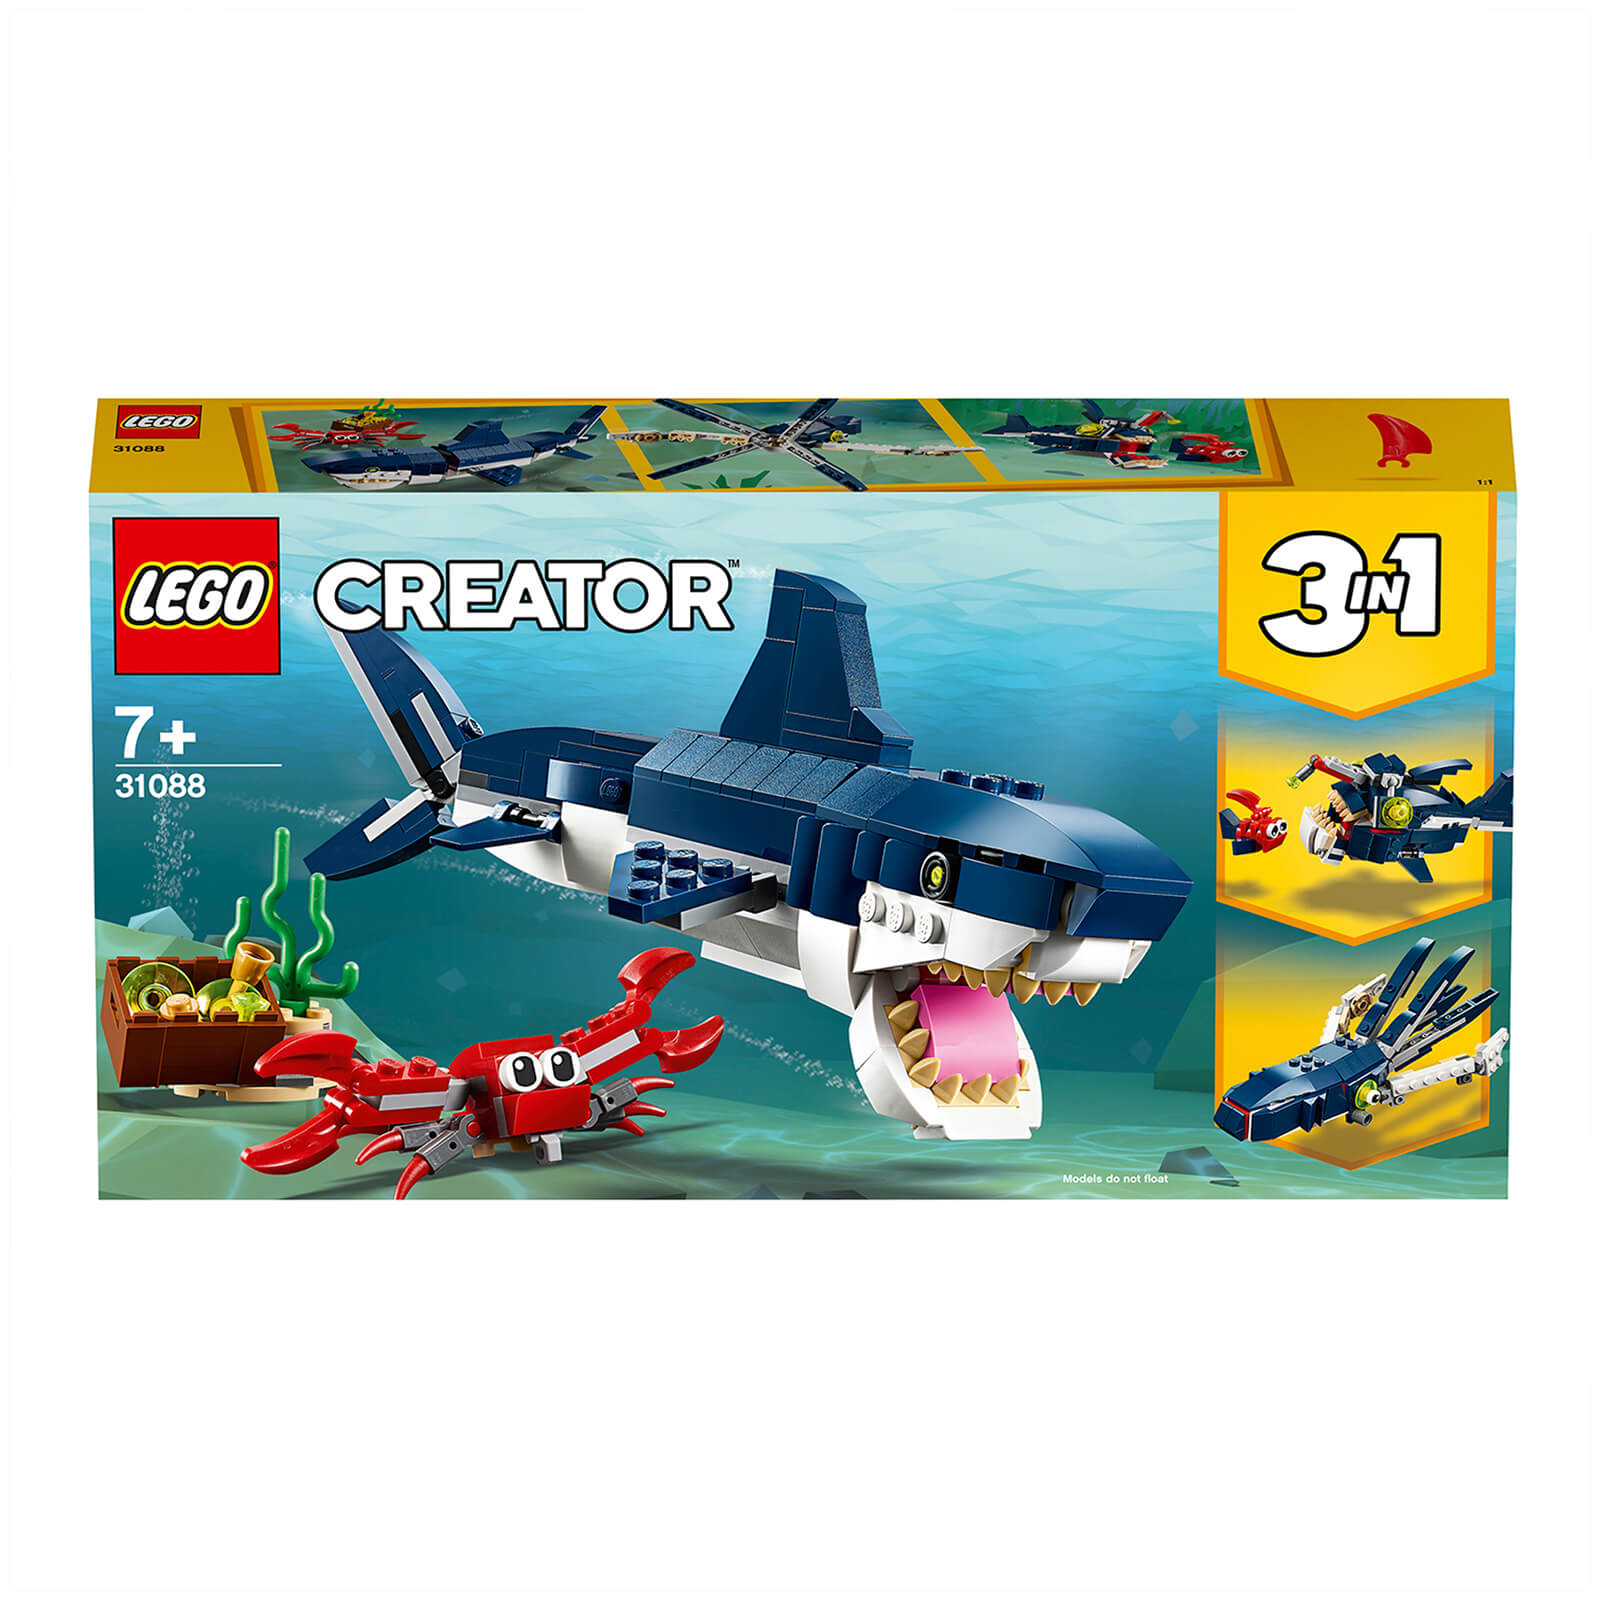 LEGO Creator: 3 in 1 Deep Sea Creatures Shark Set (31088)